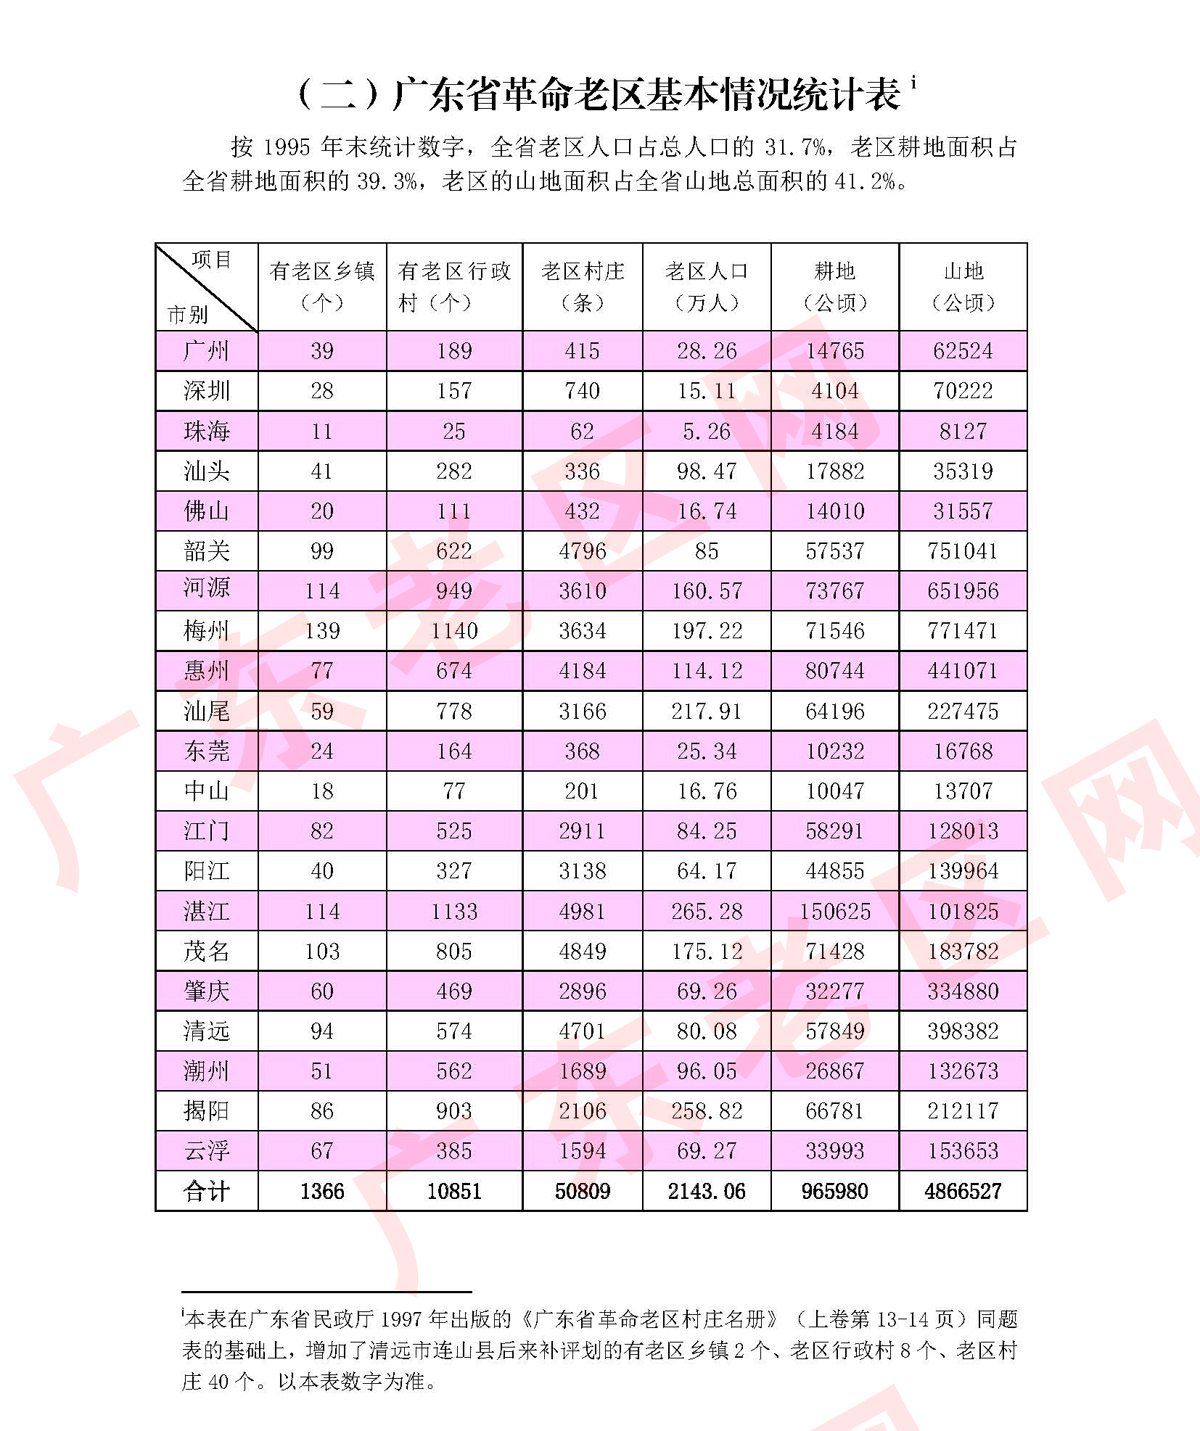 2 广东省革命老区基本情况统计表220328副本.jpg